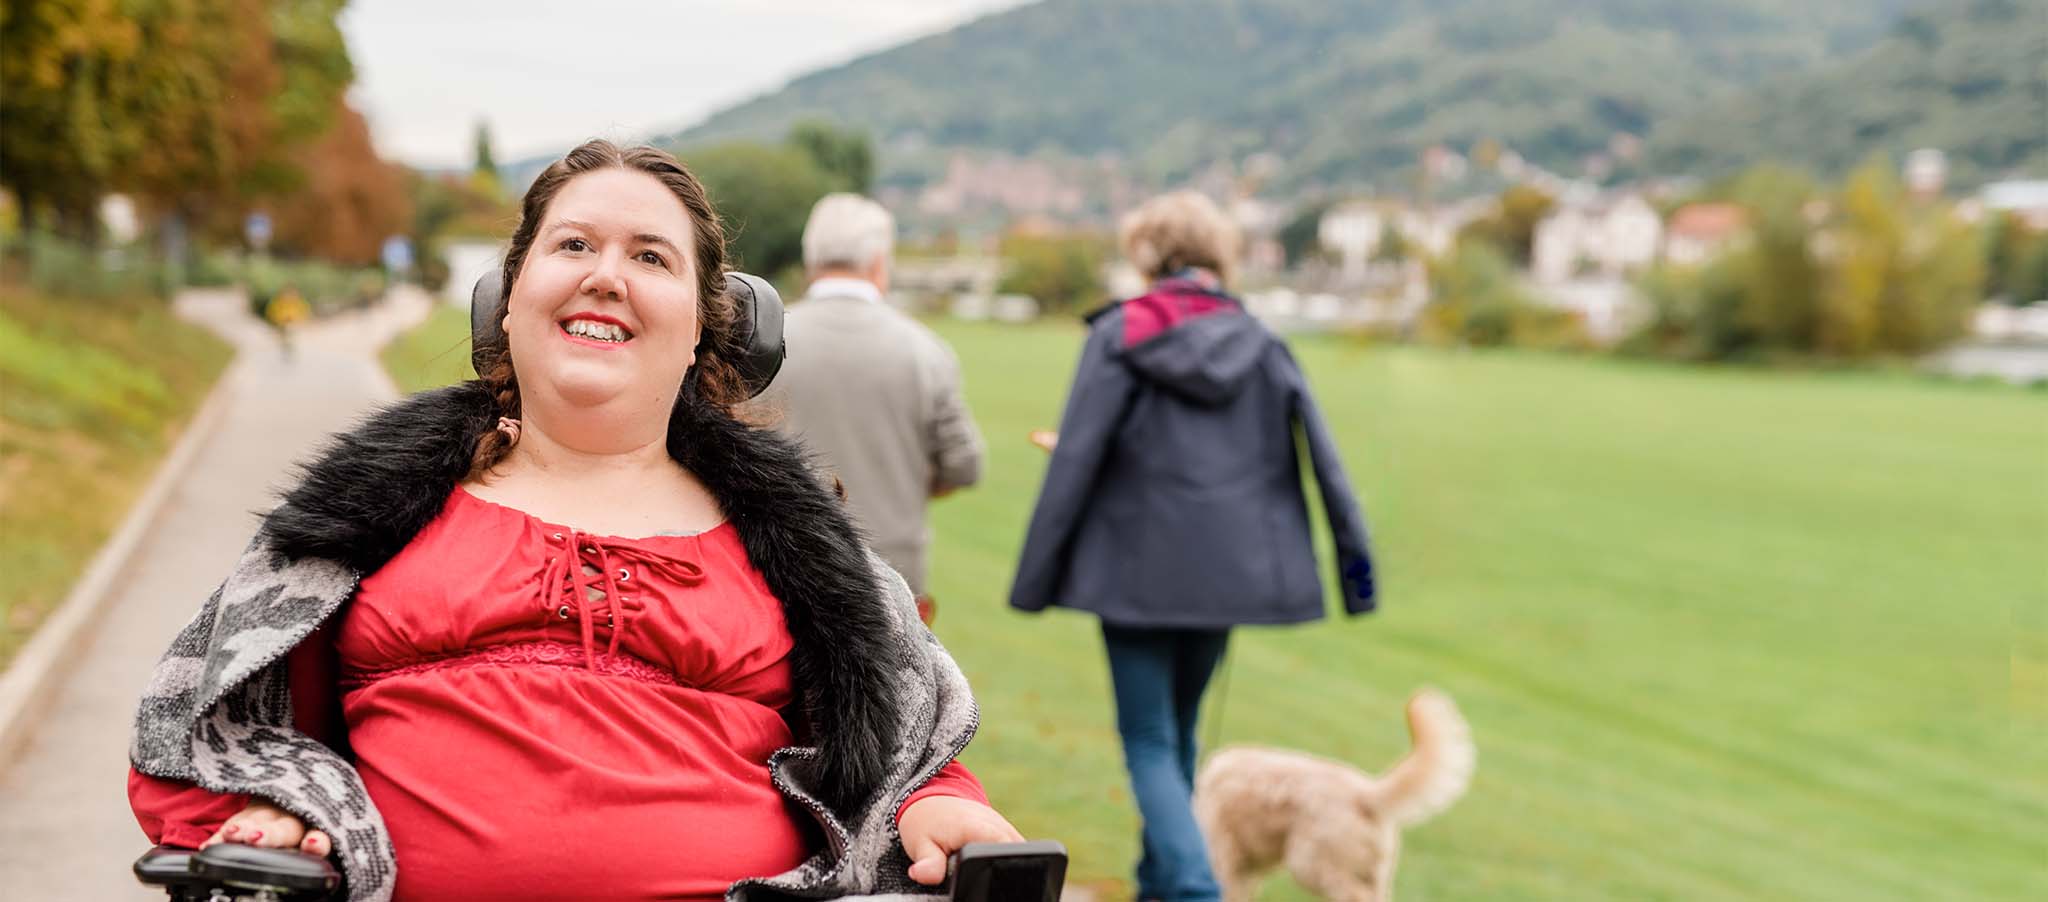 asmin lebt mit Spinaler Muskelatrophie und kann unter Therapie mit dem Rollstuhl die Welt erkunden.